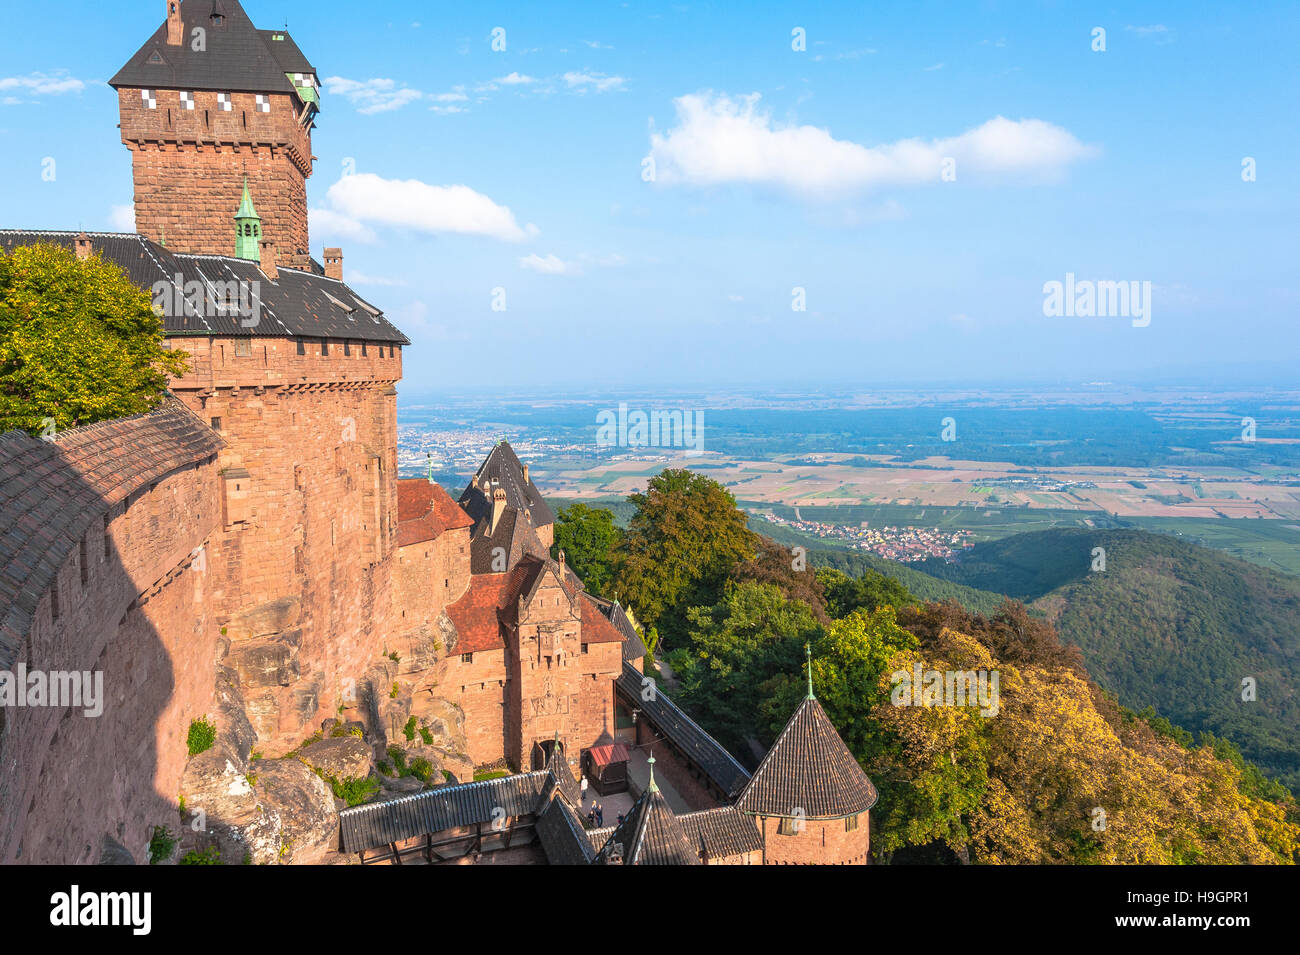 Château Haut-Koenigsburg avec vue panoramique, château du Moyen Âge, reconstruit à l'architecture romantique, Alsace, France Banque D'Images